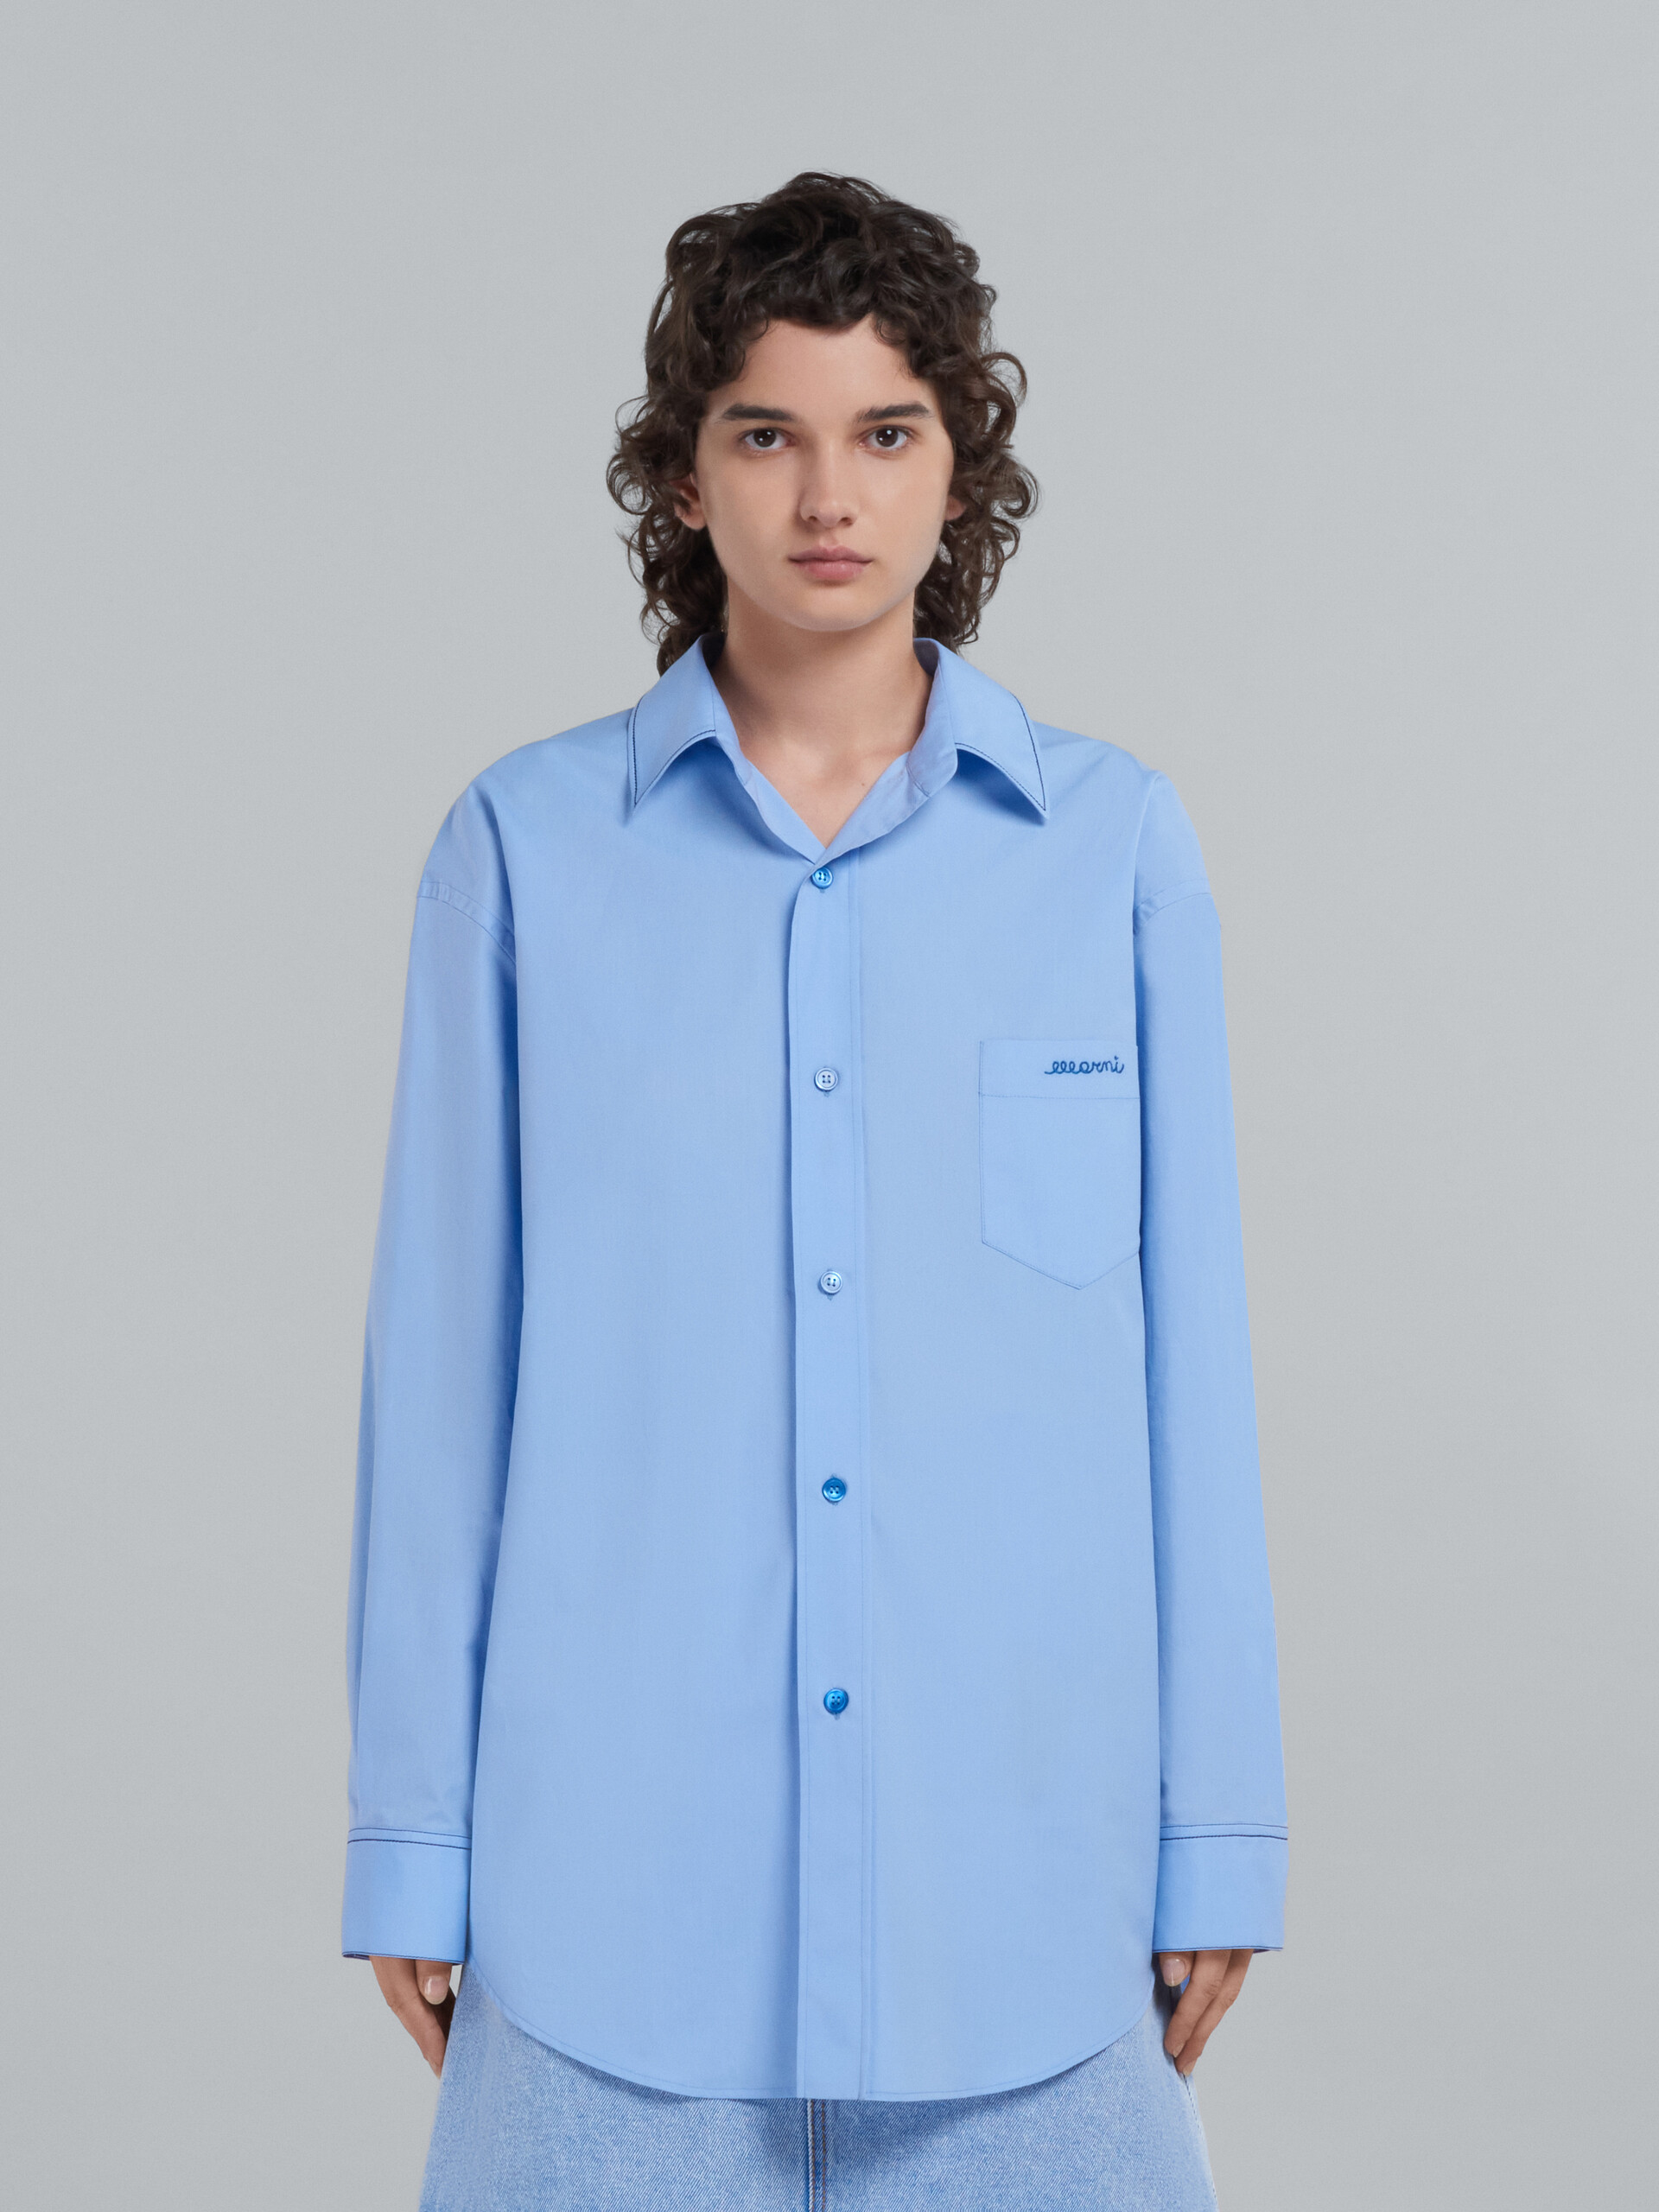 Chemise en coton biologique bleu clair avec logo brodé - Chemises - Image 2